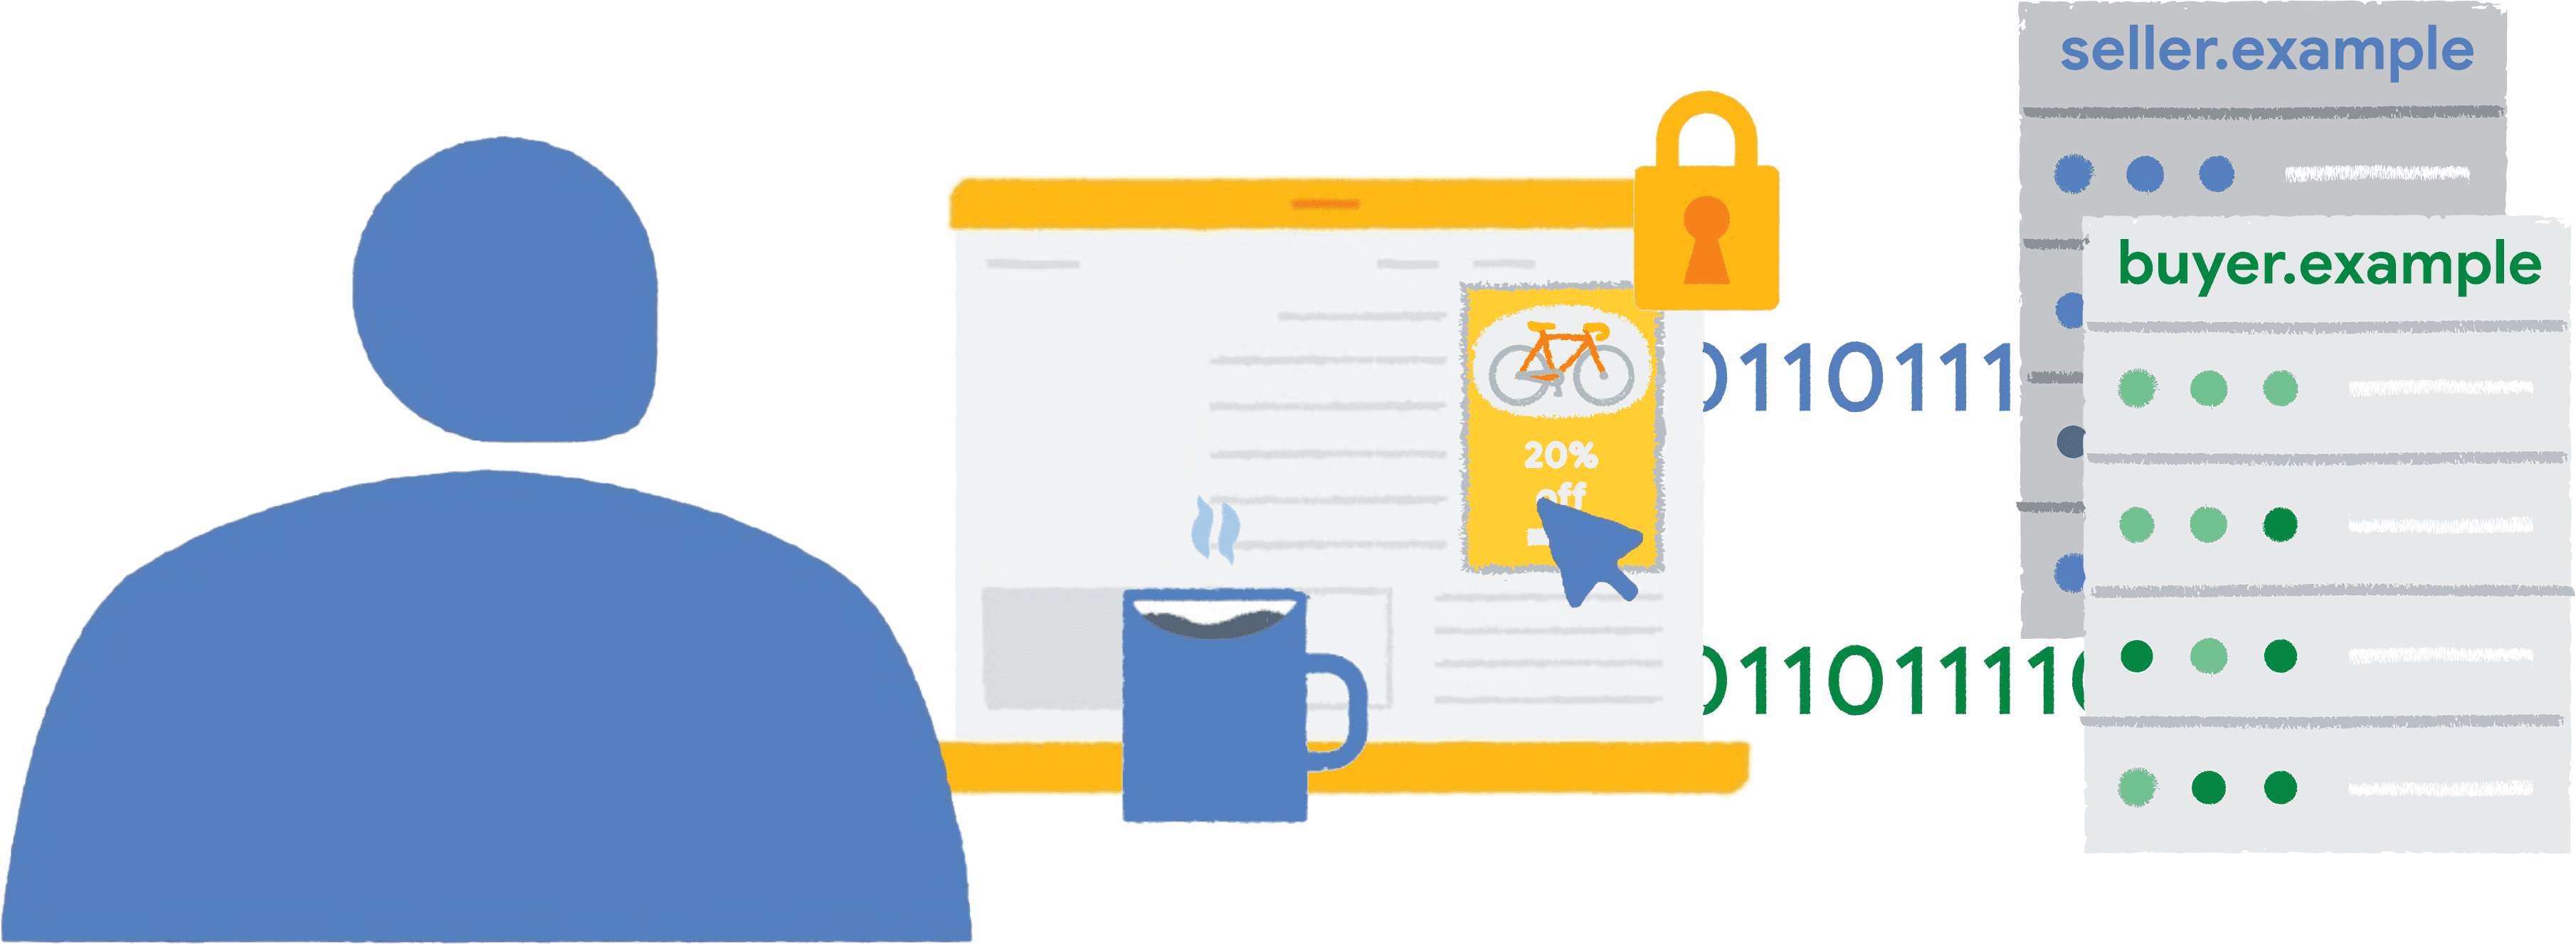 Bir kullanıcı, haber web sitesinde çitle çevrili bir çerçeveye yerleştirilmiş bir bisiklet reklamını tıklar. Rapor verileri, satıcıya ve alıcılara gönderilir.